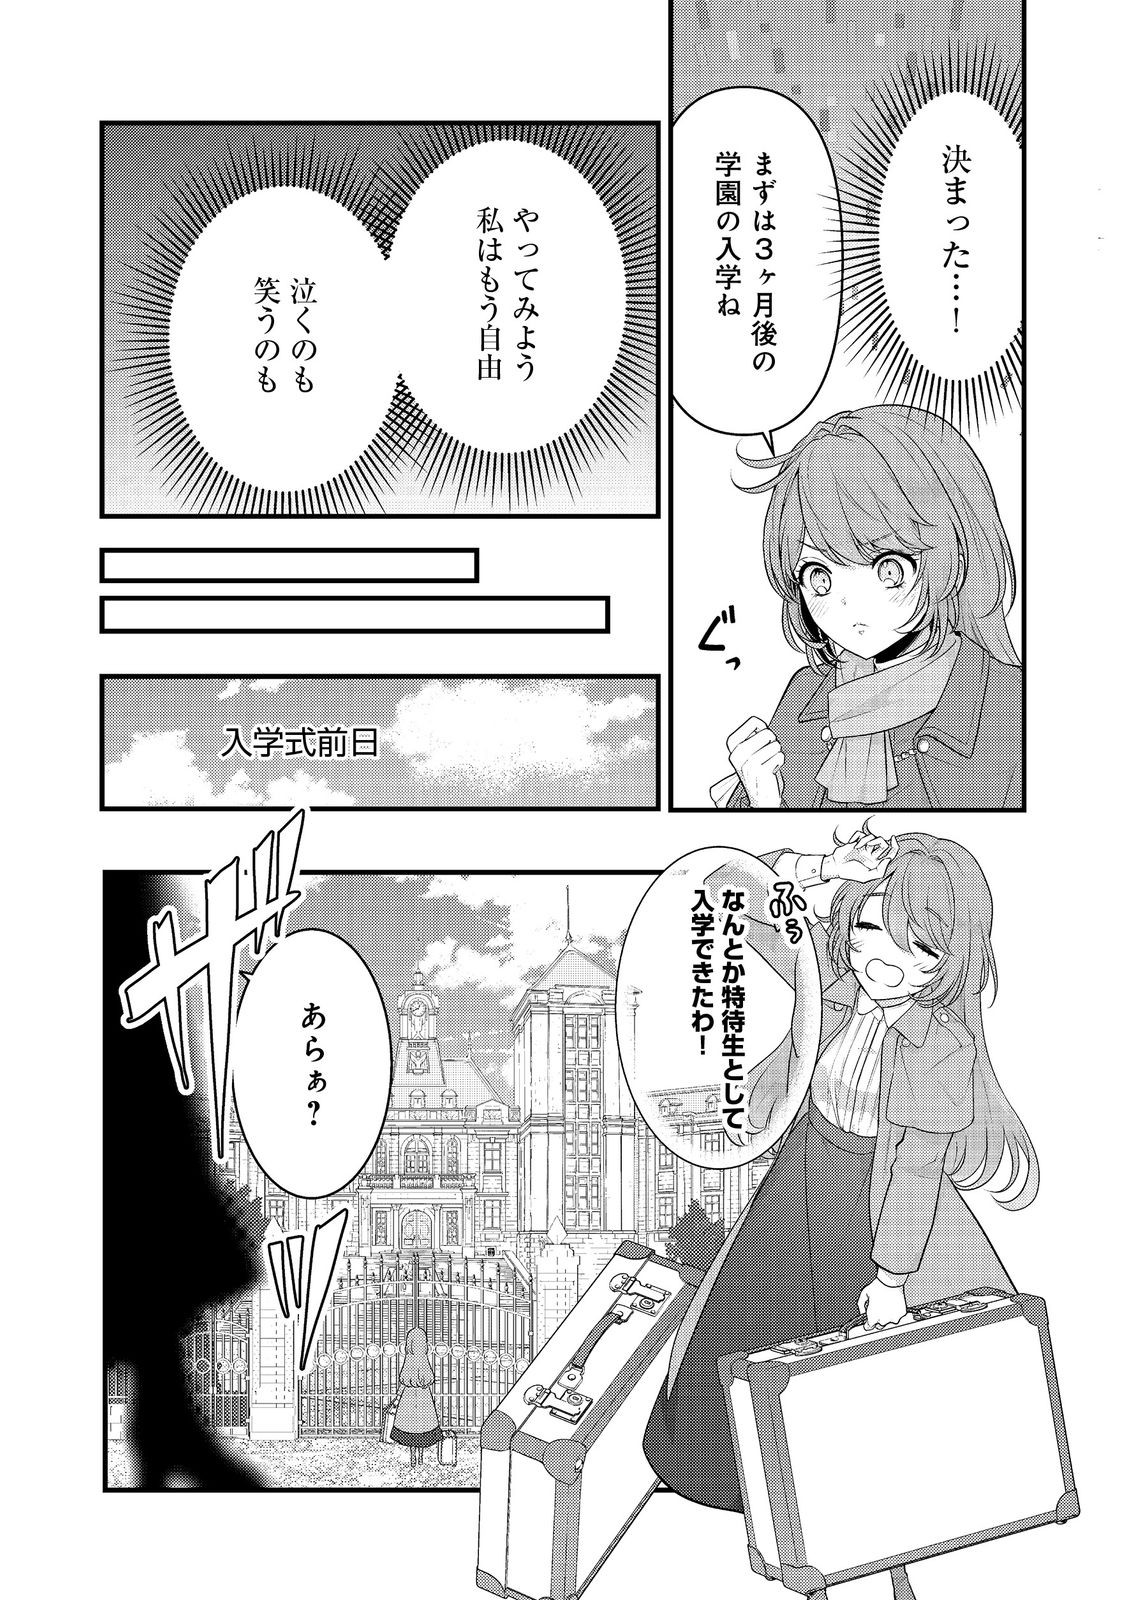 Kanjou wo Korosu no wo Yameta Moto Koushaku Reijou wa, Minna ni Dekiaisareteimasu! - Chapter 1 - Page 12